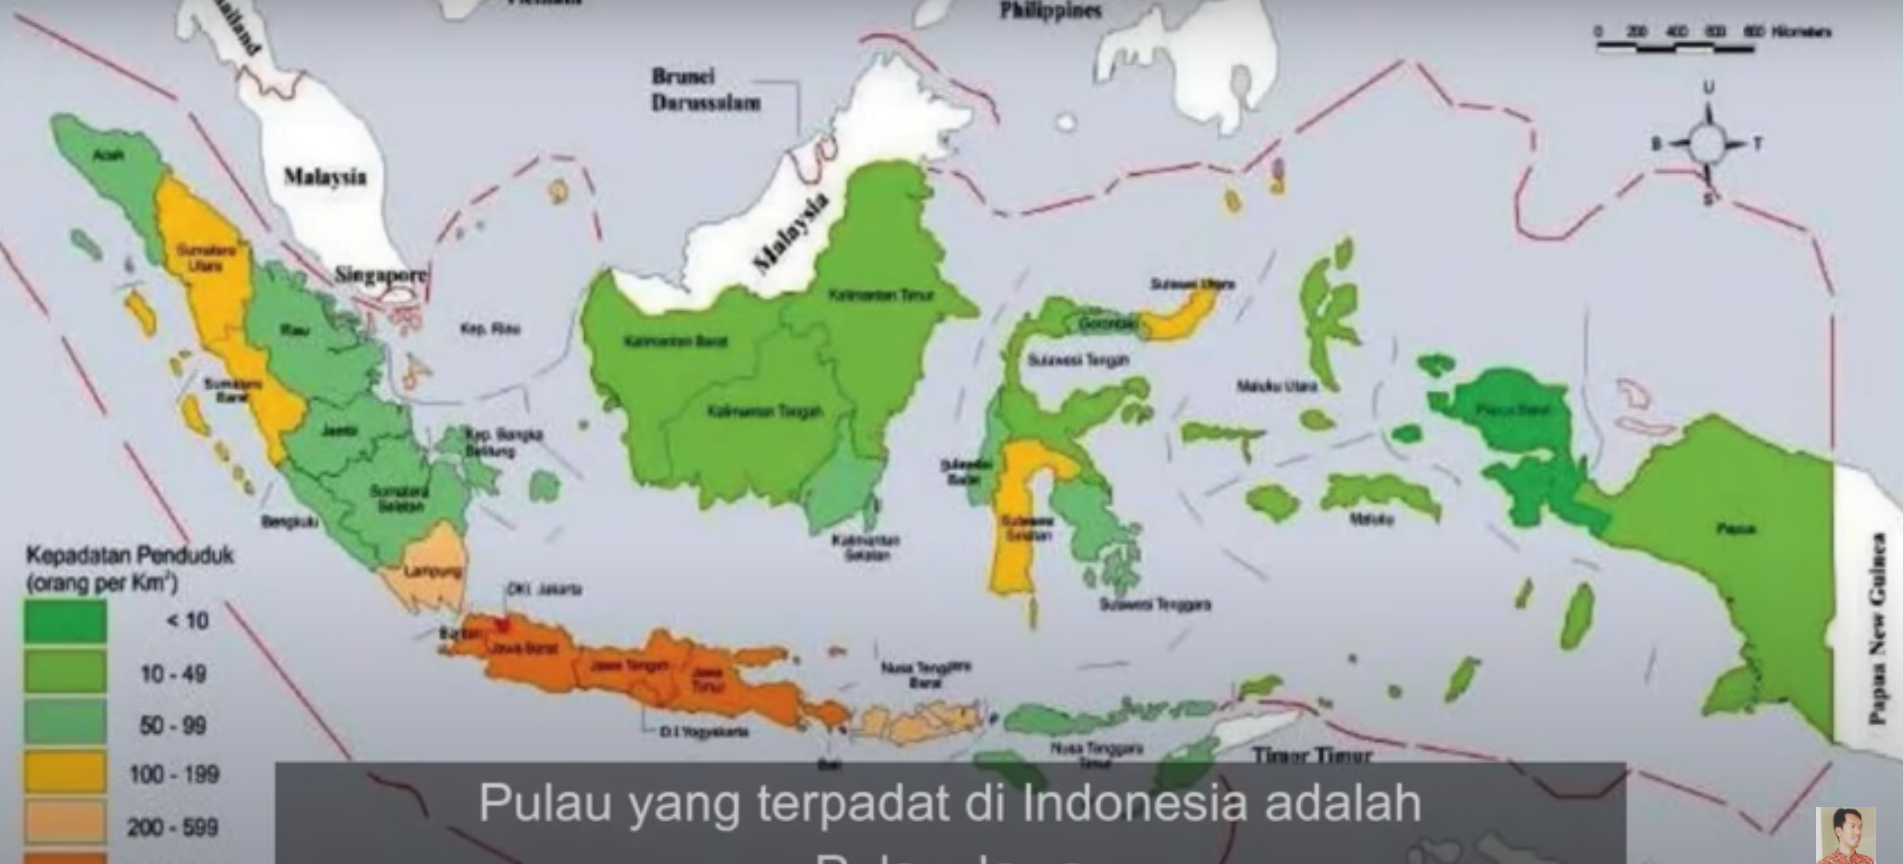 Peta persebaran kepadatan penduduk di Indonesia kelas 5 SD tema 1.